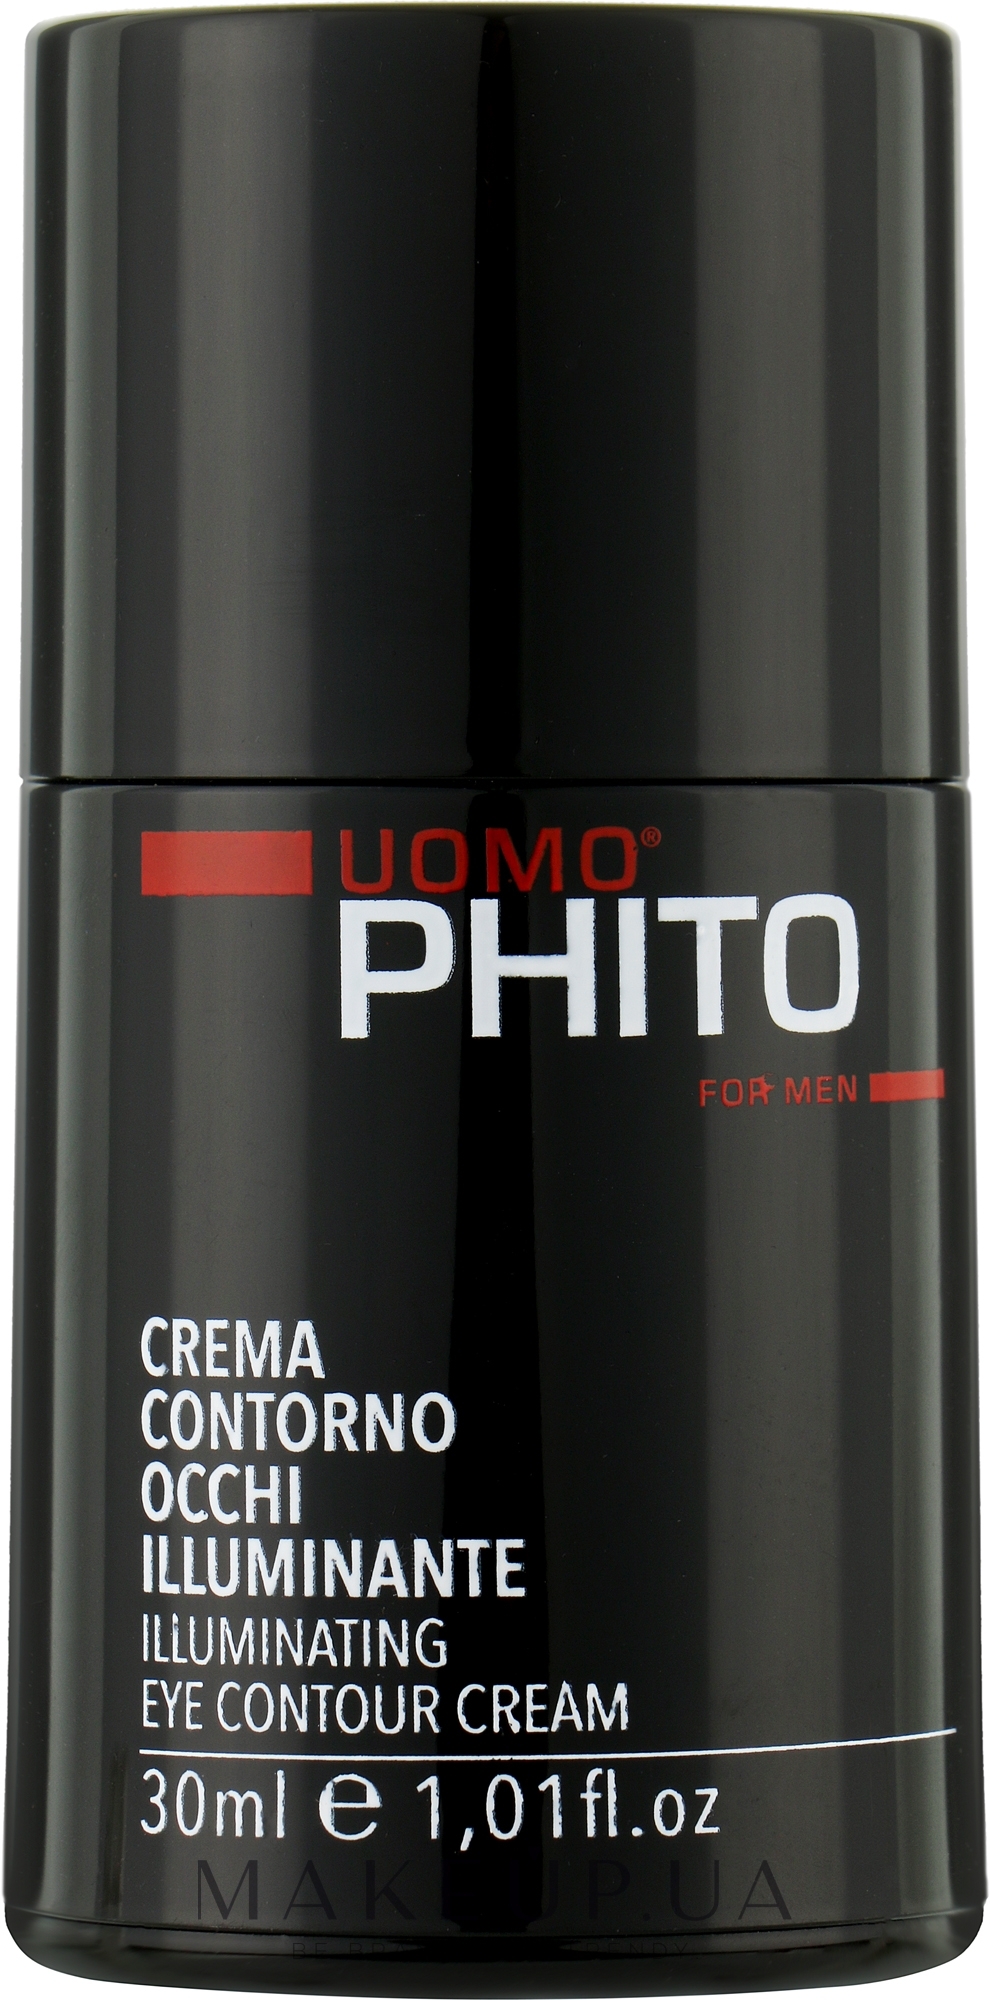 Подтягивающий крем для контура глаз для мужчин - Phito Uomo Illuminanting Eye Contour Cream  — фото 30ml